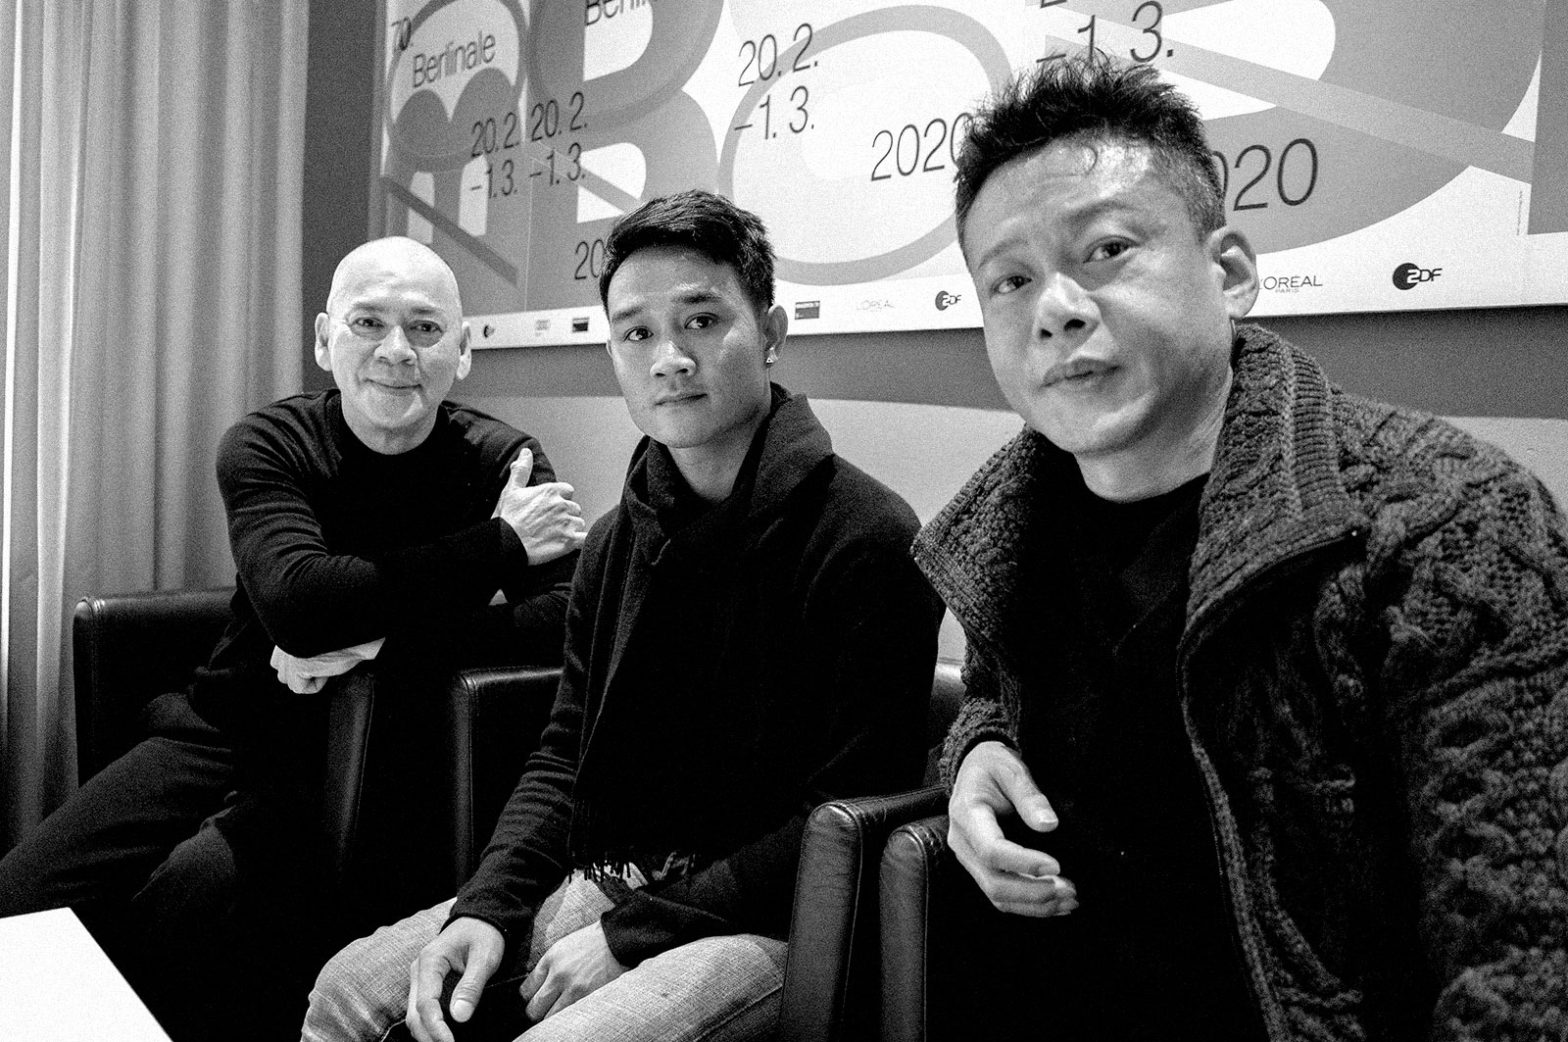 Tsai Ming-liang, Anong Houngheuangsy, and Lee Kang-sheng (photo by Darren Hughes)